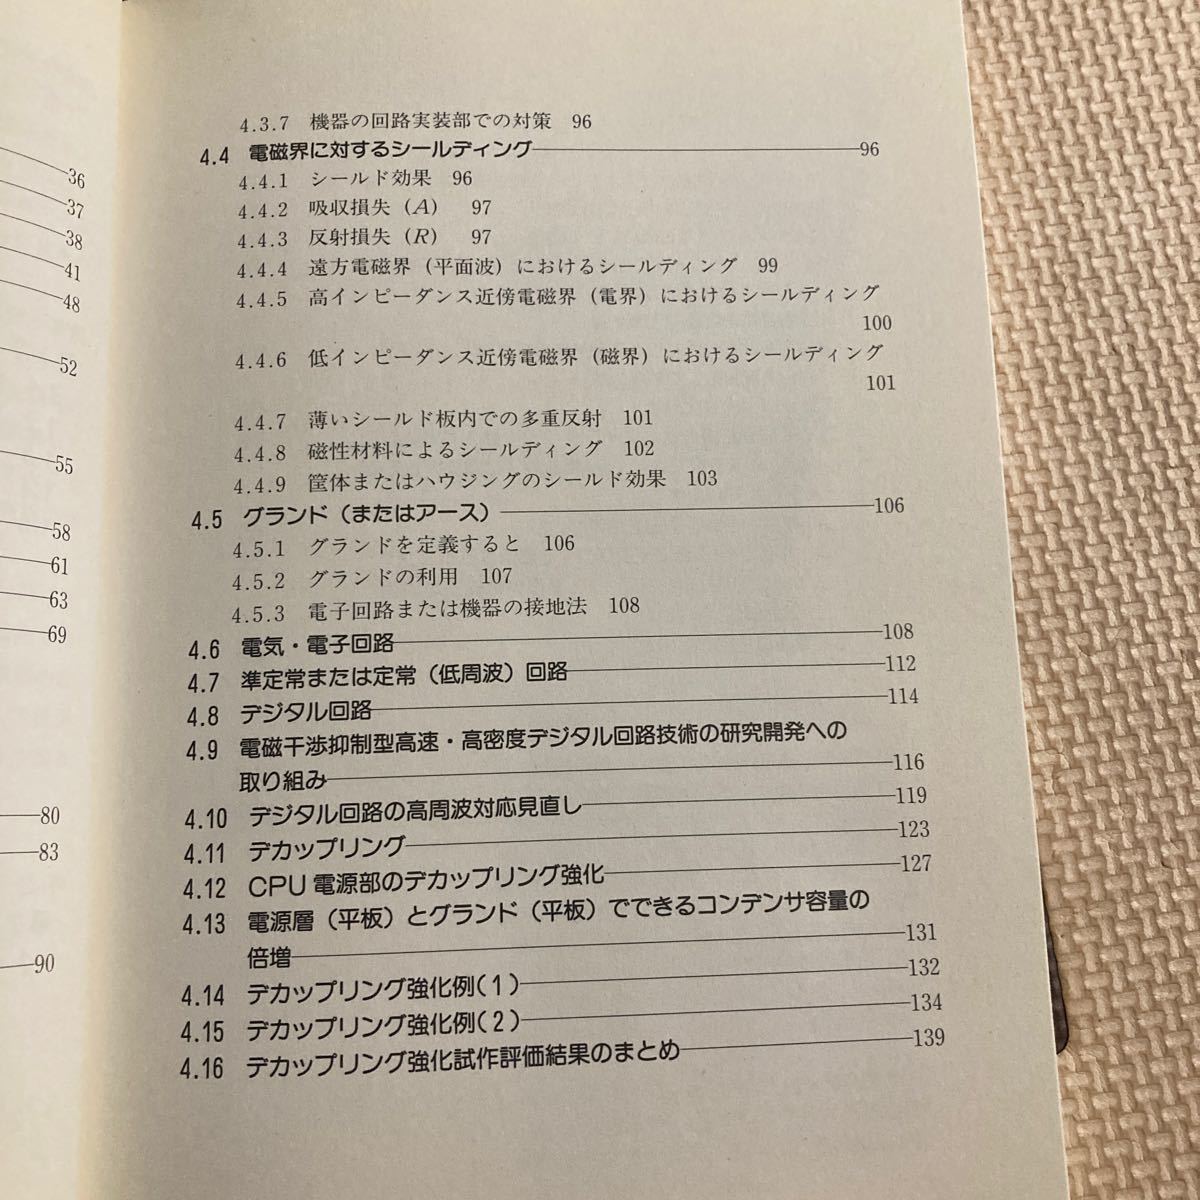 はじめてのノイズ対策技術 ビギナーズブックス４／遠矢弘知 (著者)